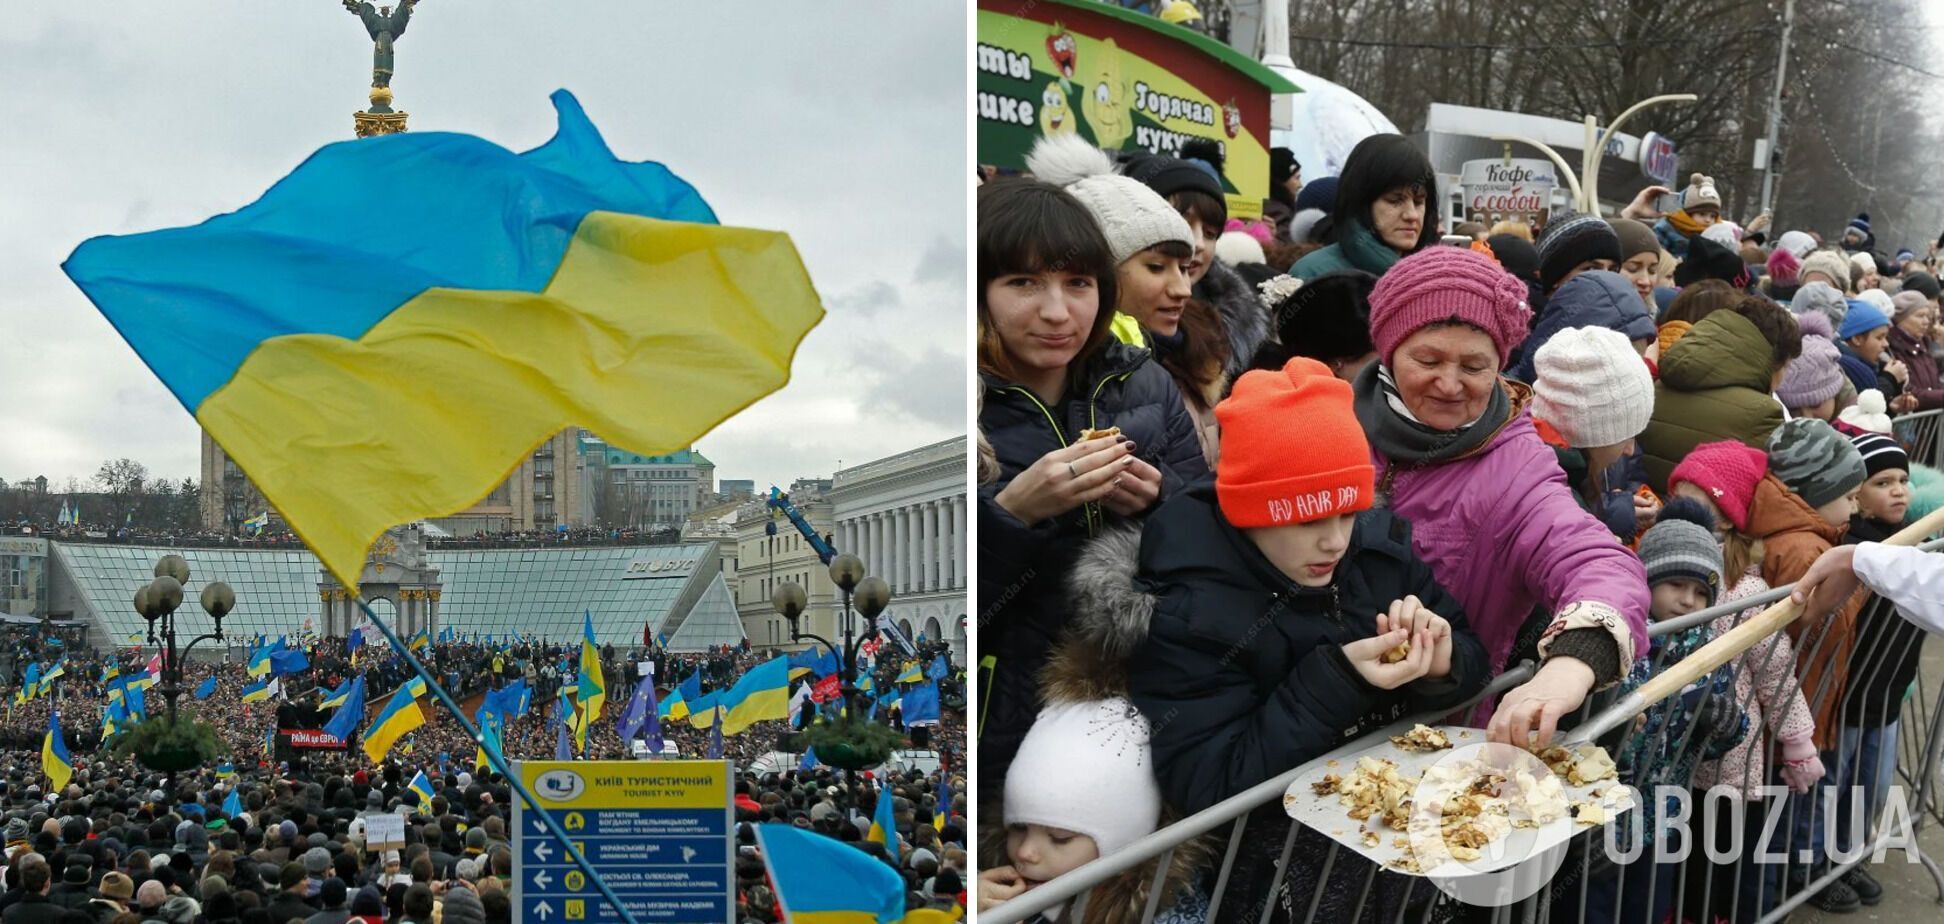 Как украинцы относятся к россиянам и беларусам и считают ли возможным примирение: результаты соцопроса